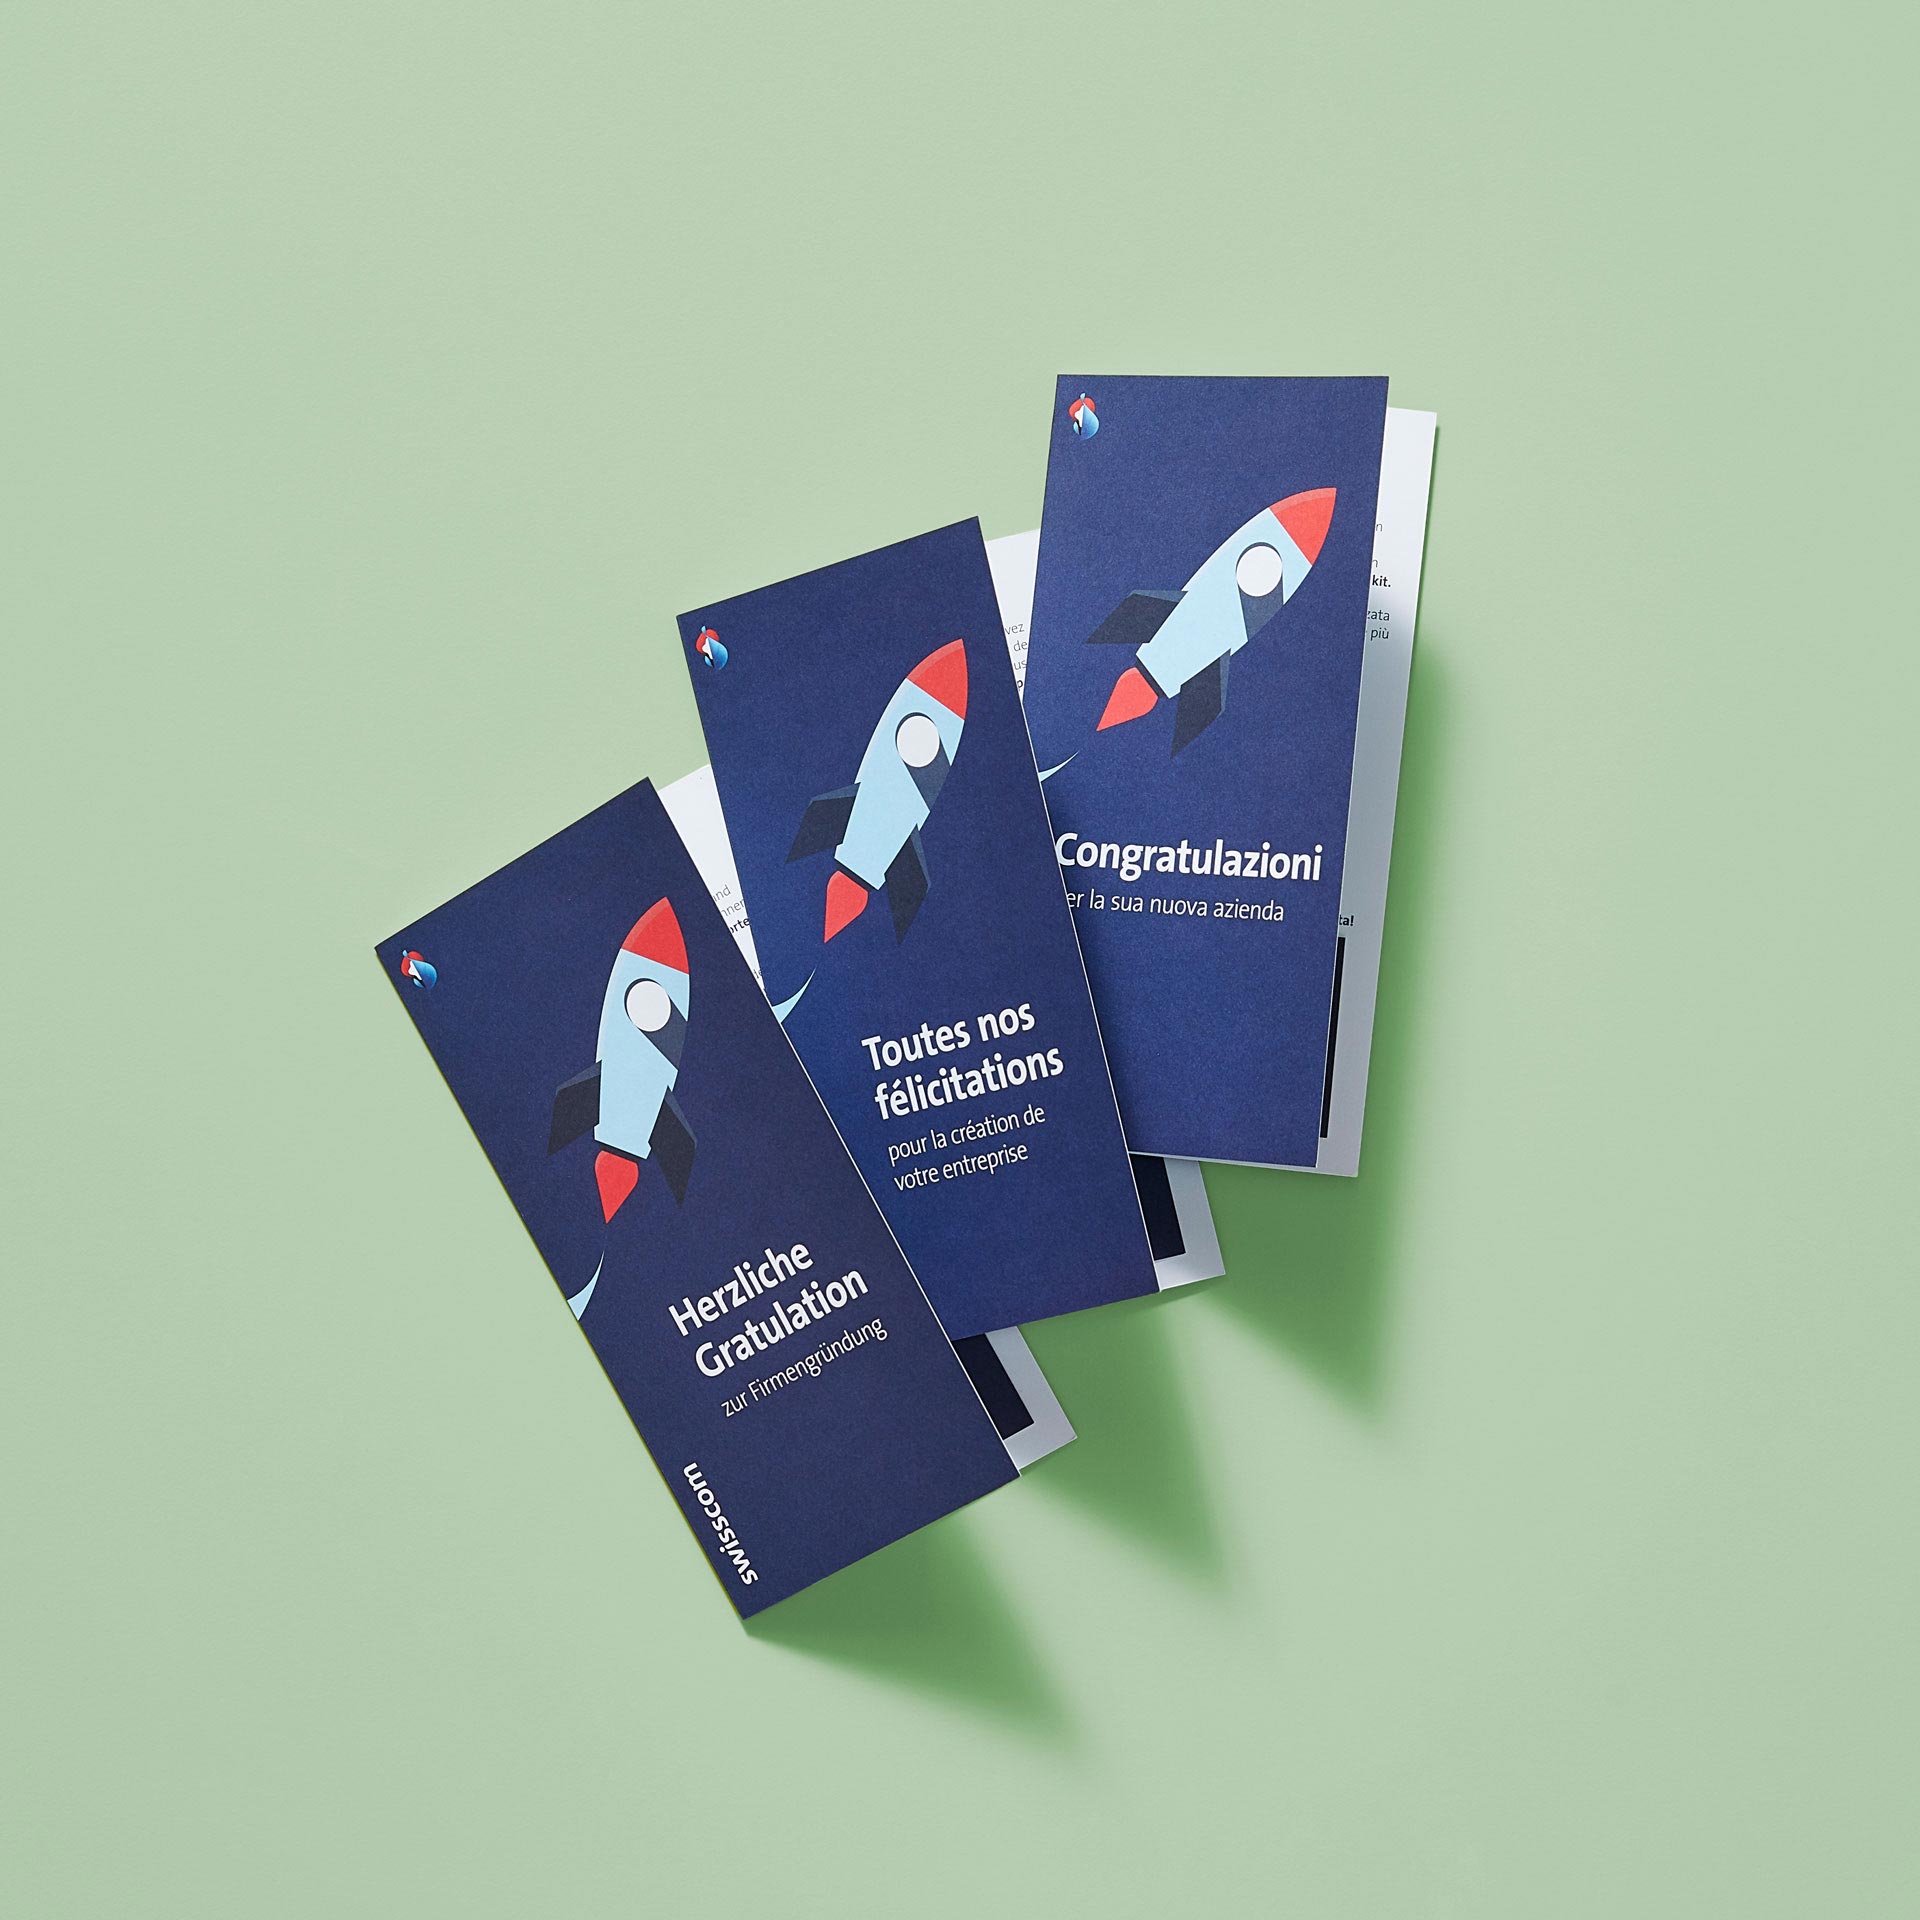 Drei Flyer mit Raketen-Illustration auf Detsch, Französisch und Italienisch